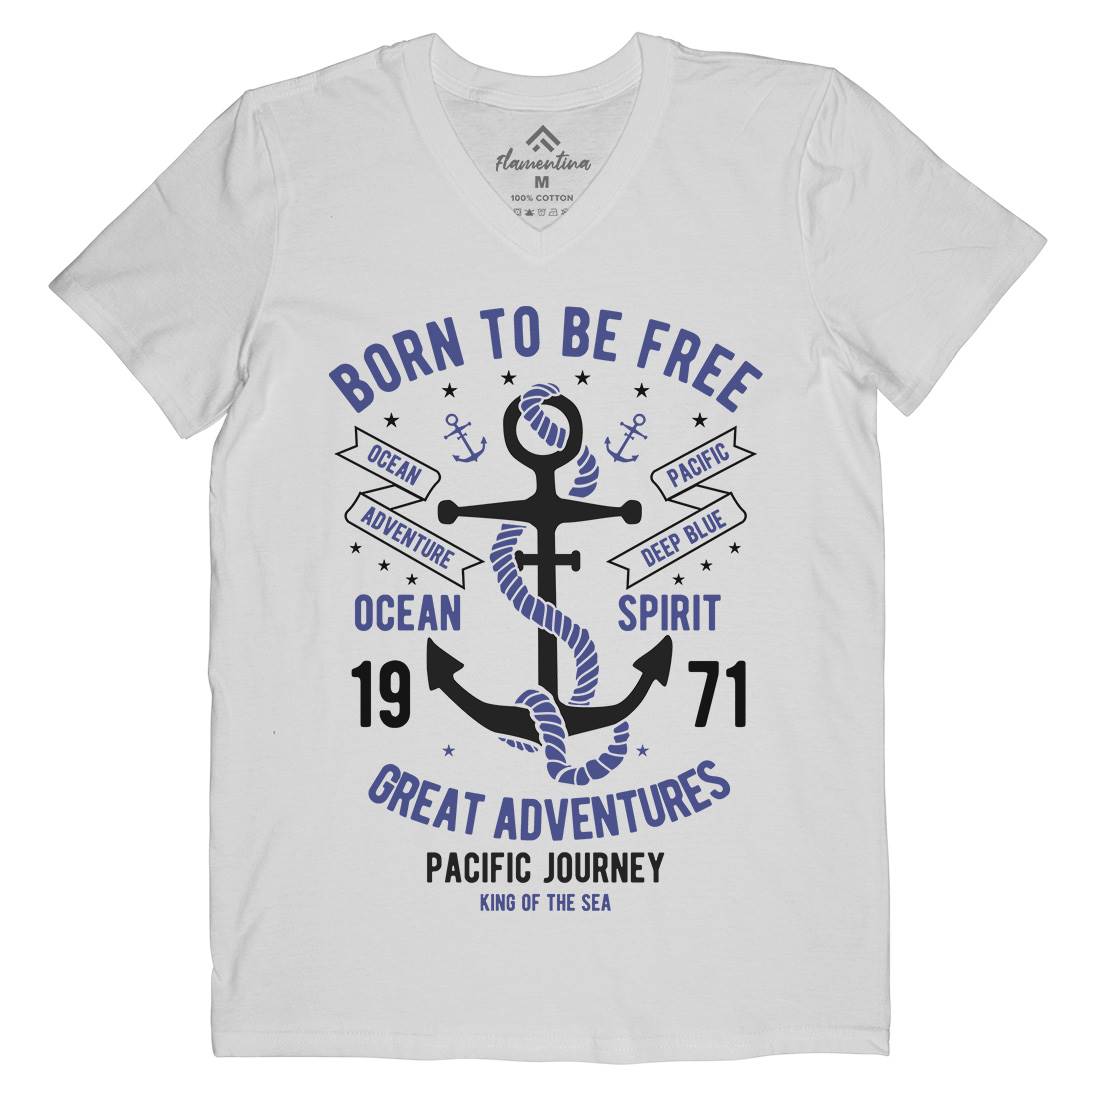 Born To Be Free Mens Organic V-Neck T-Shirt Navy B184